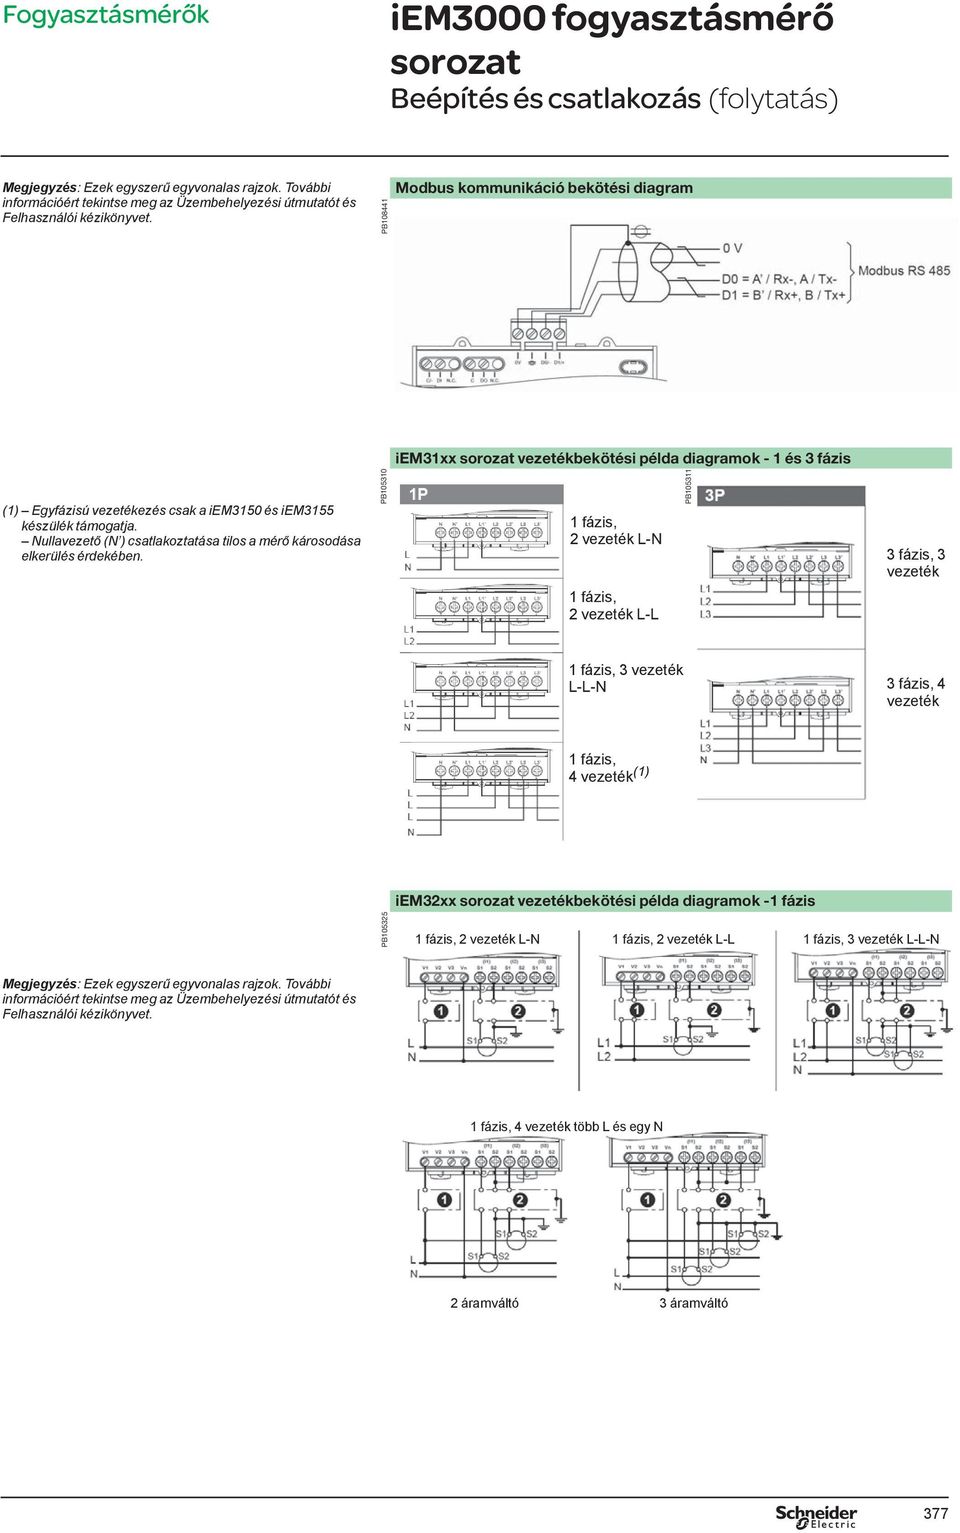 PB105310 iem31xx vezetékekötési példa diagramok - 1 és 3 fázis 1 fázis, 2 vezeték L-N 1 fázis, 2 vezeték L-L PB105311 3 fázis, 3 vezeték 1 fázis, 3 vezeték L-L-N 3 fázis, 4 vezeték 1 fázis, 4 vezeték